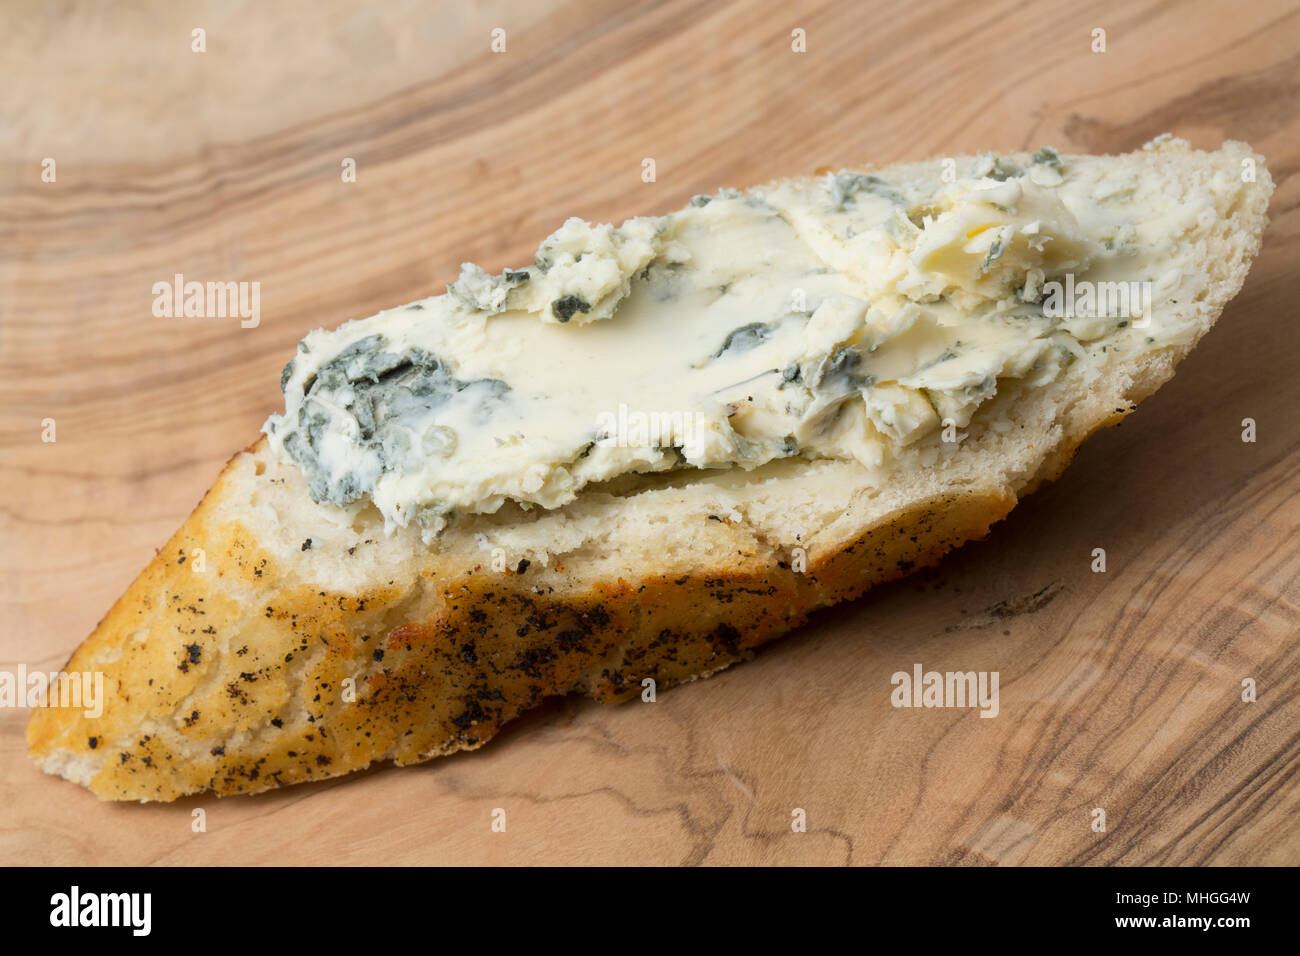 Il francese Saint Agur formaggi acquistati da un supermercato nel Regno Unito e la diffusione su un pane imburrato con capre latte burro. Saint Agur è un formaggio blu Foto Stock